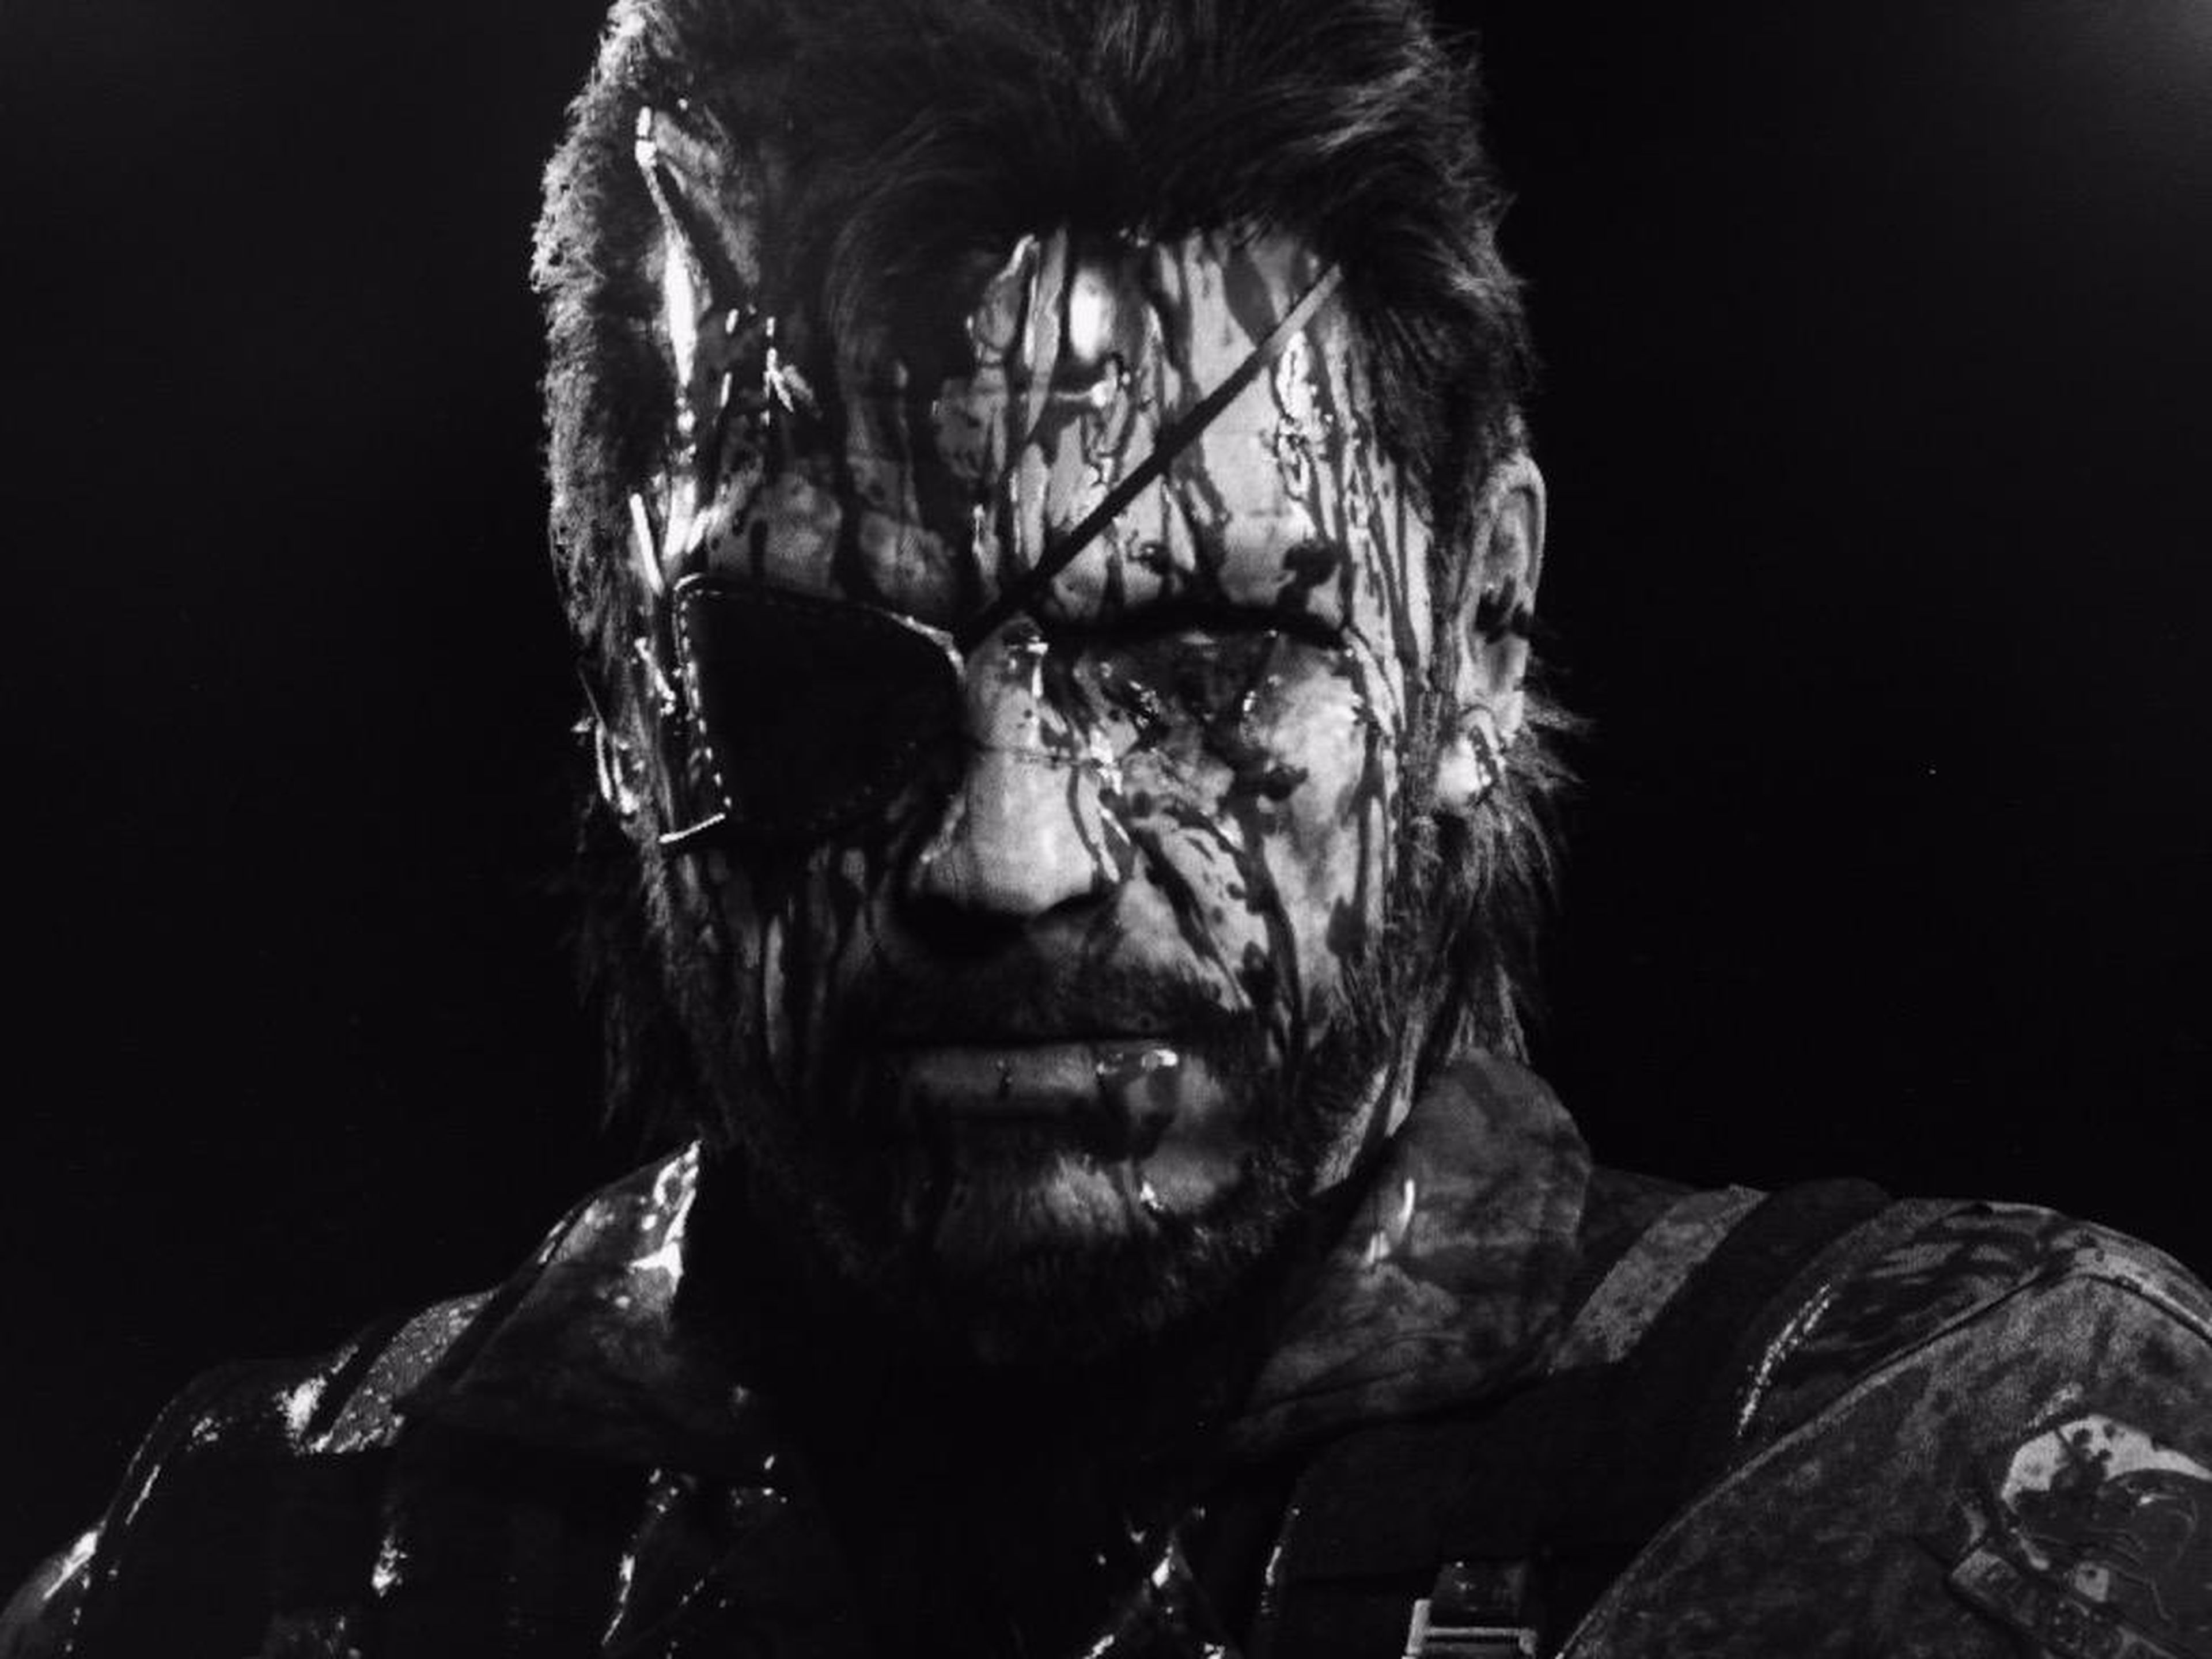 Metal Gear Solid V The Phantom Pain, Hideo Kojima muesta más sangre en un nuevo tuit